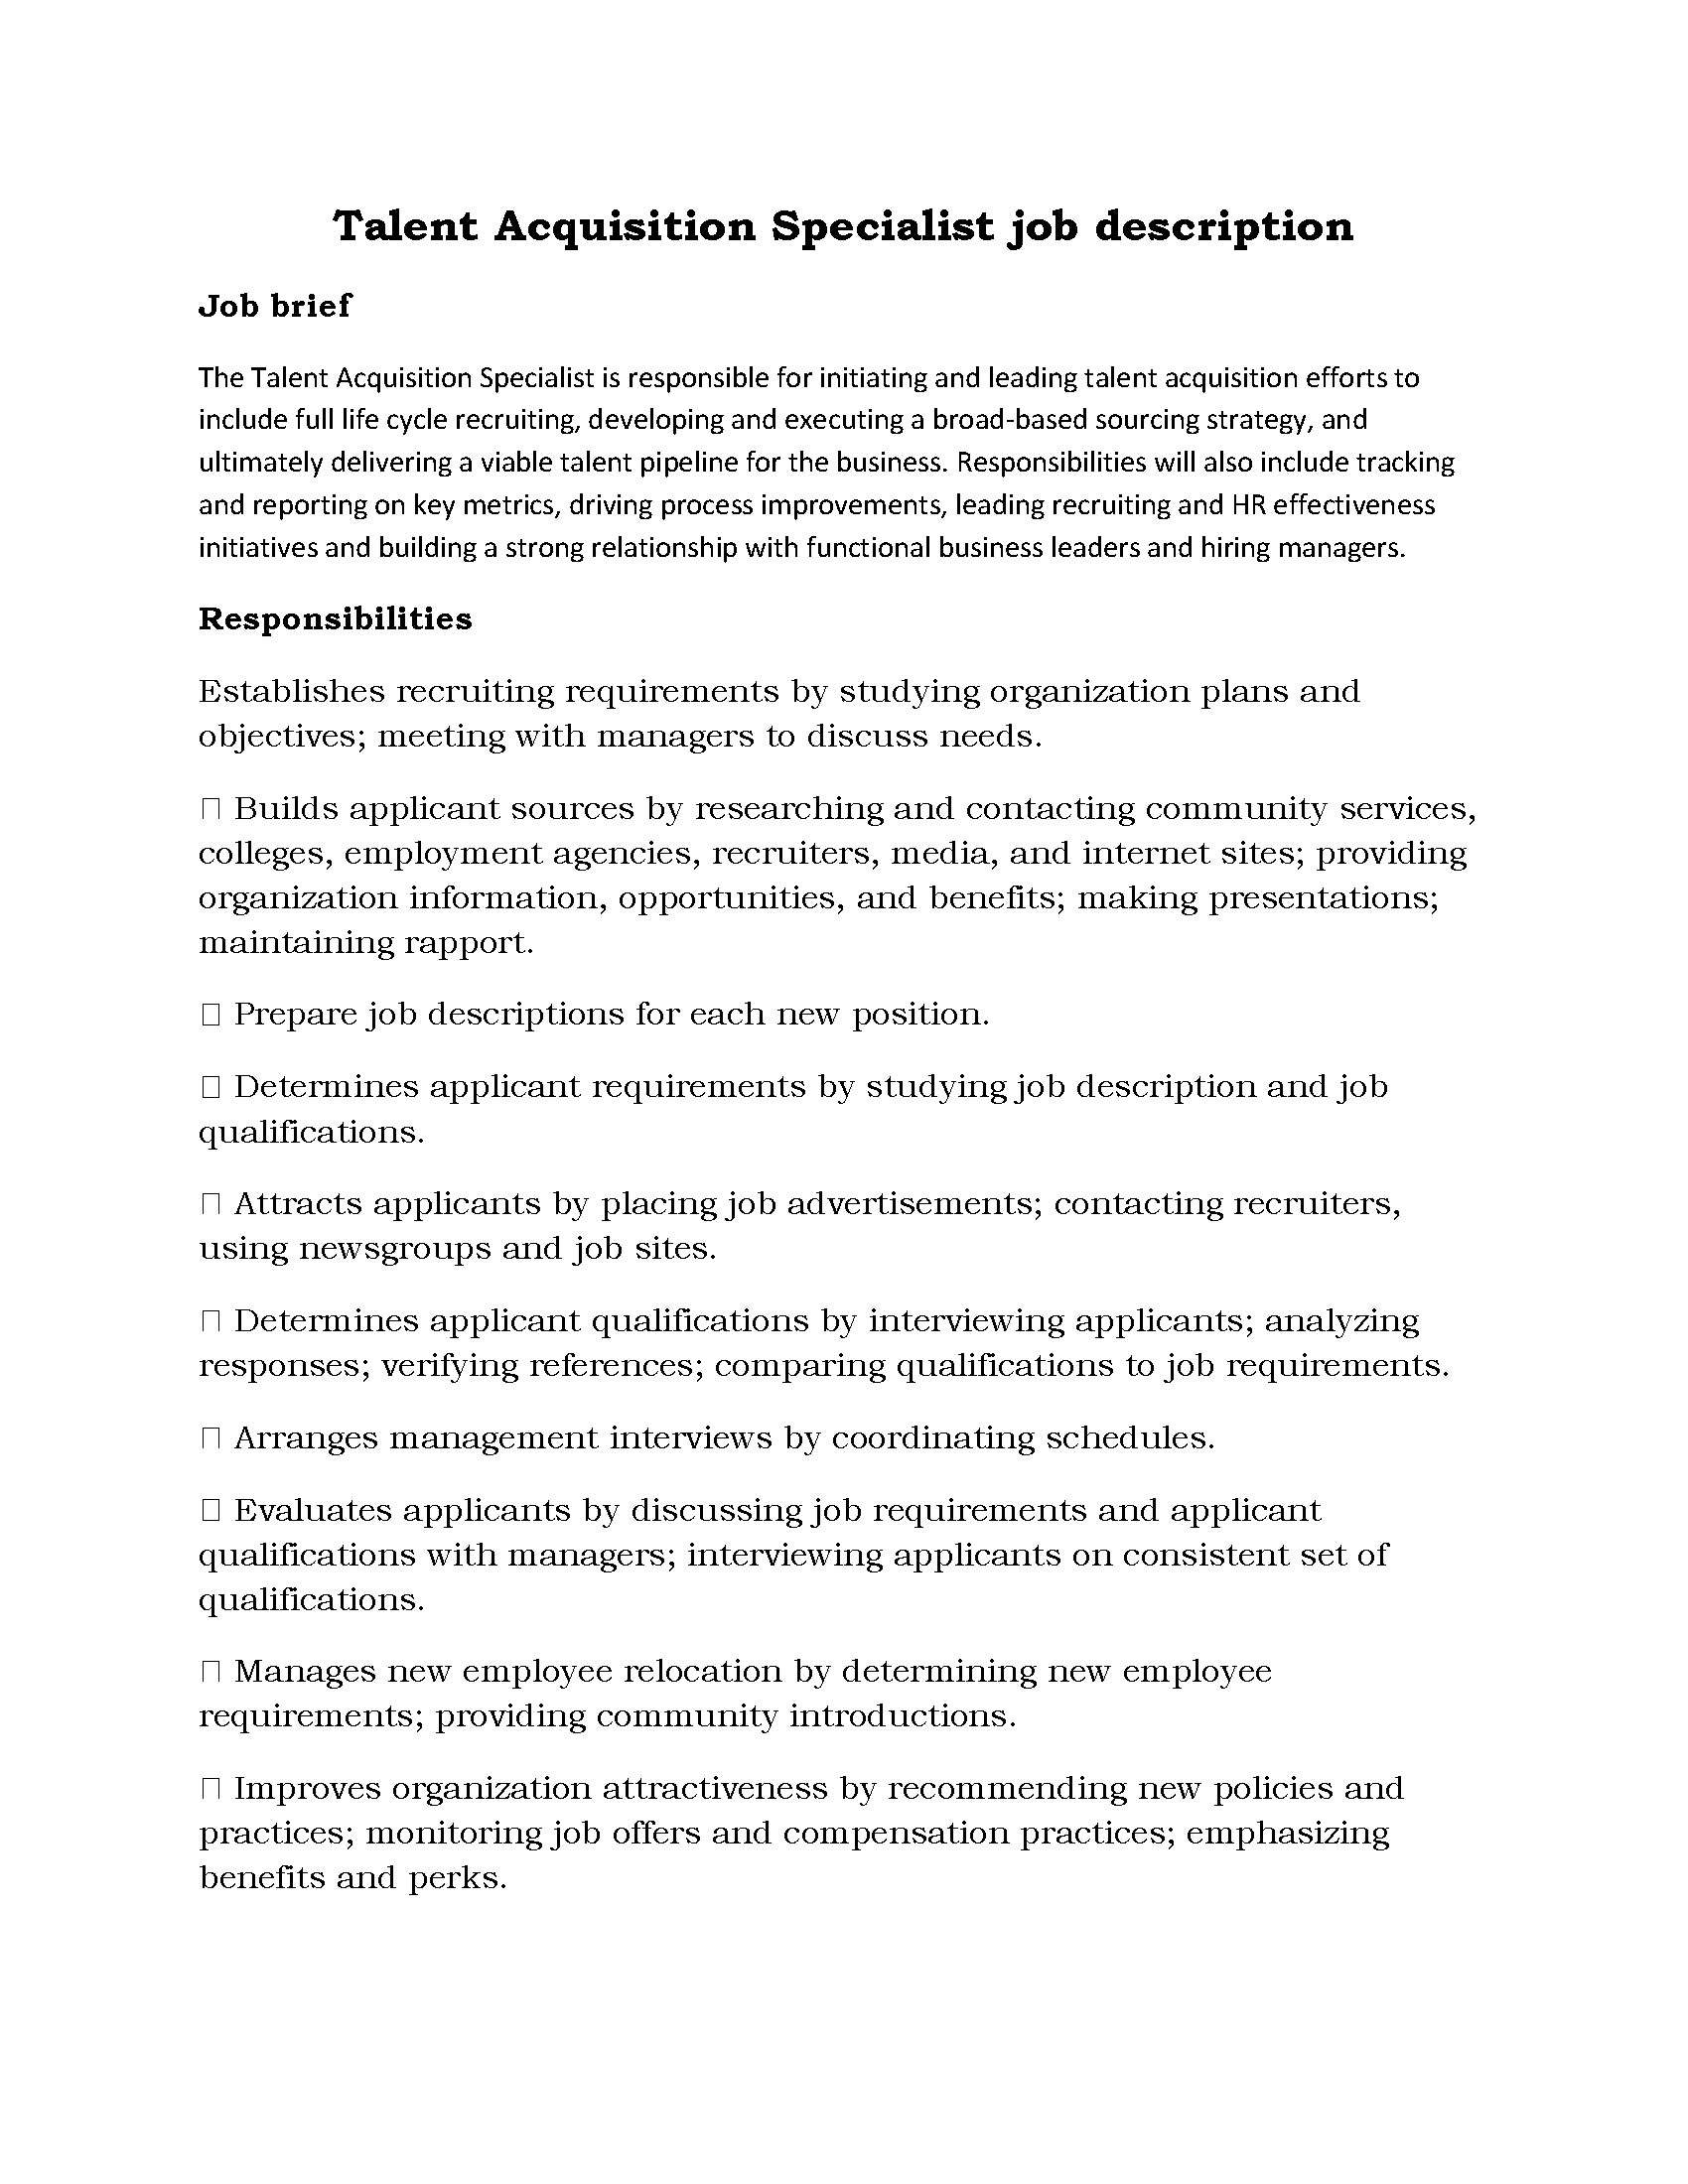 128-Talent Acquisition Specialist job description